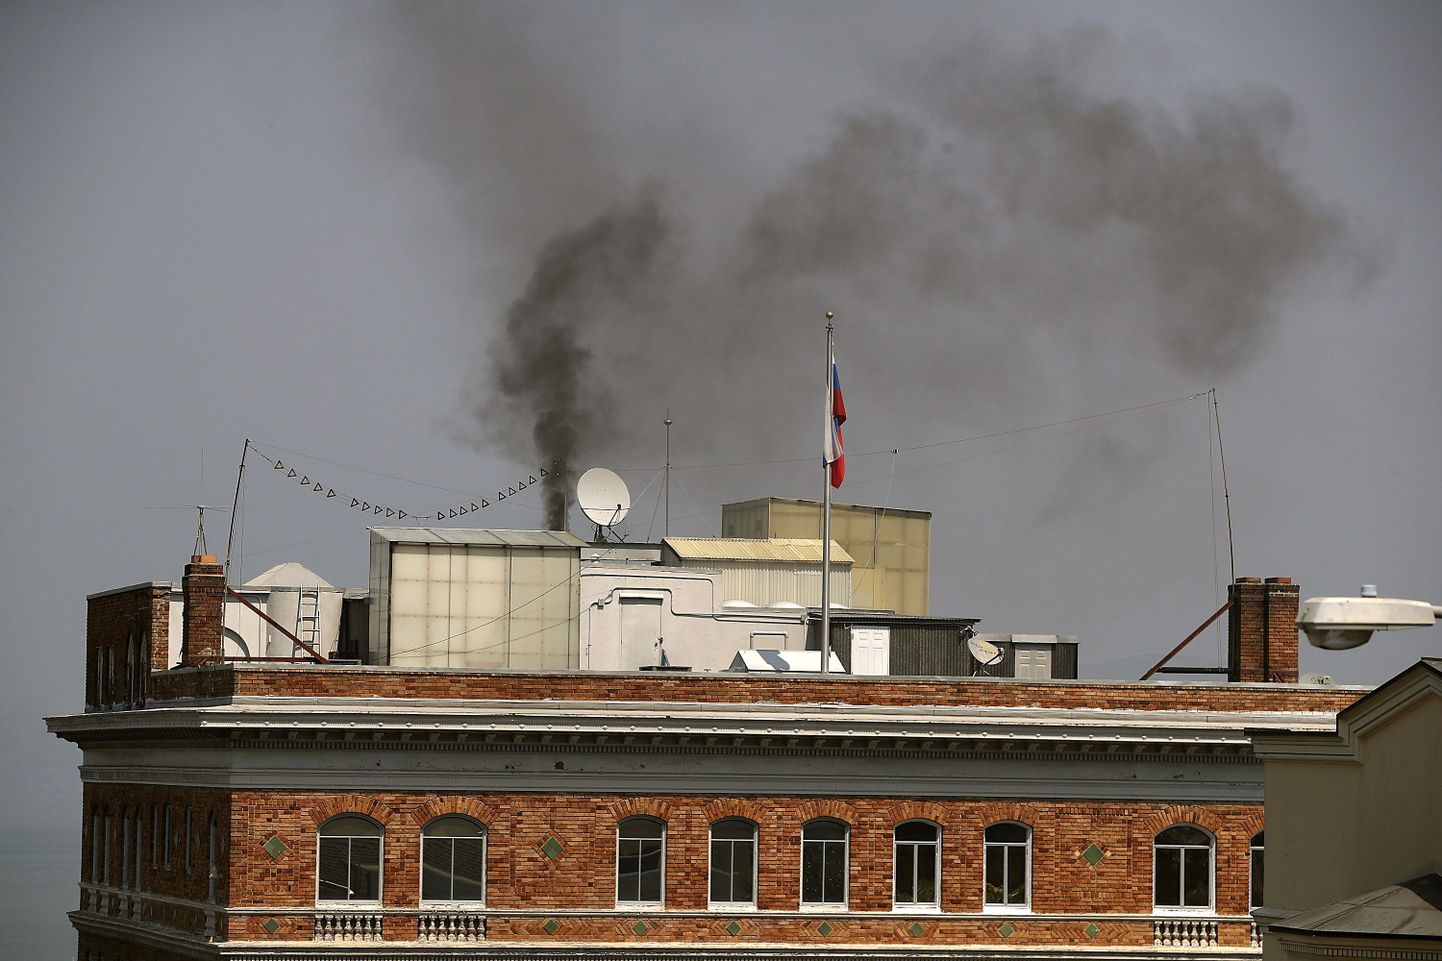 Venemaa konsulaadist tõusis suitsusammas.